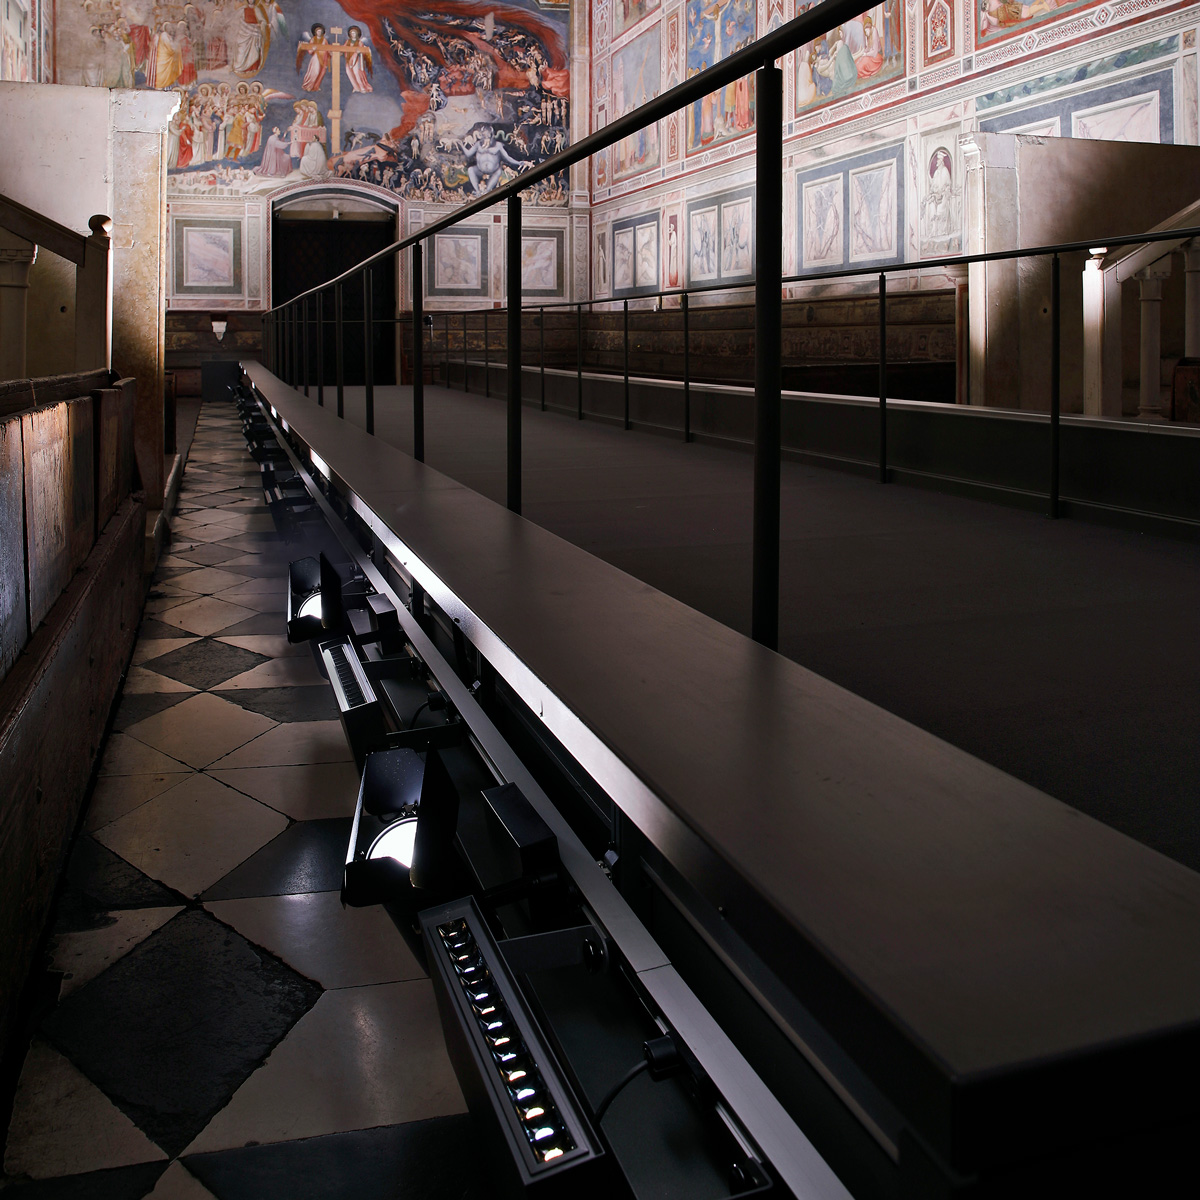 Giotto. The Scrovegni Chapel